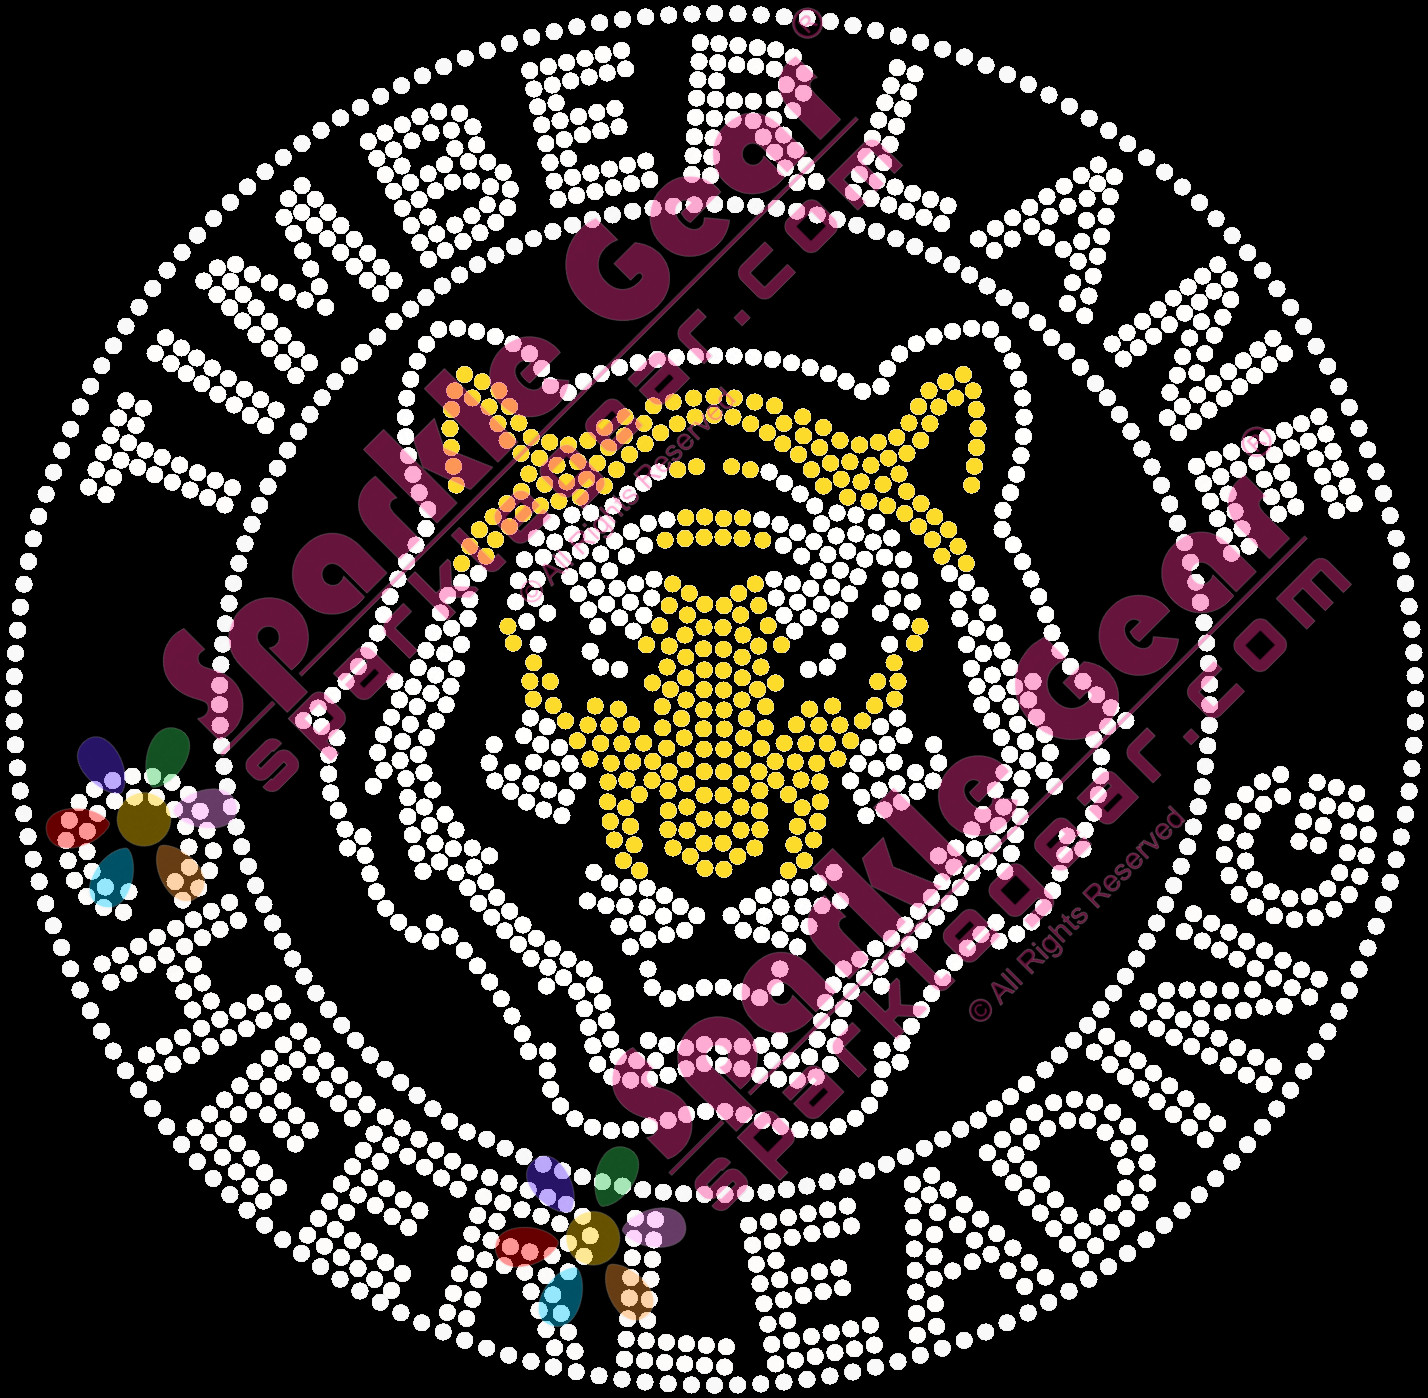 Timberlane Cheerleading Mascot Circle